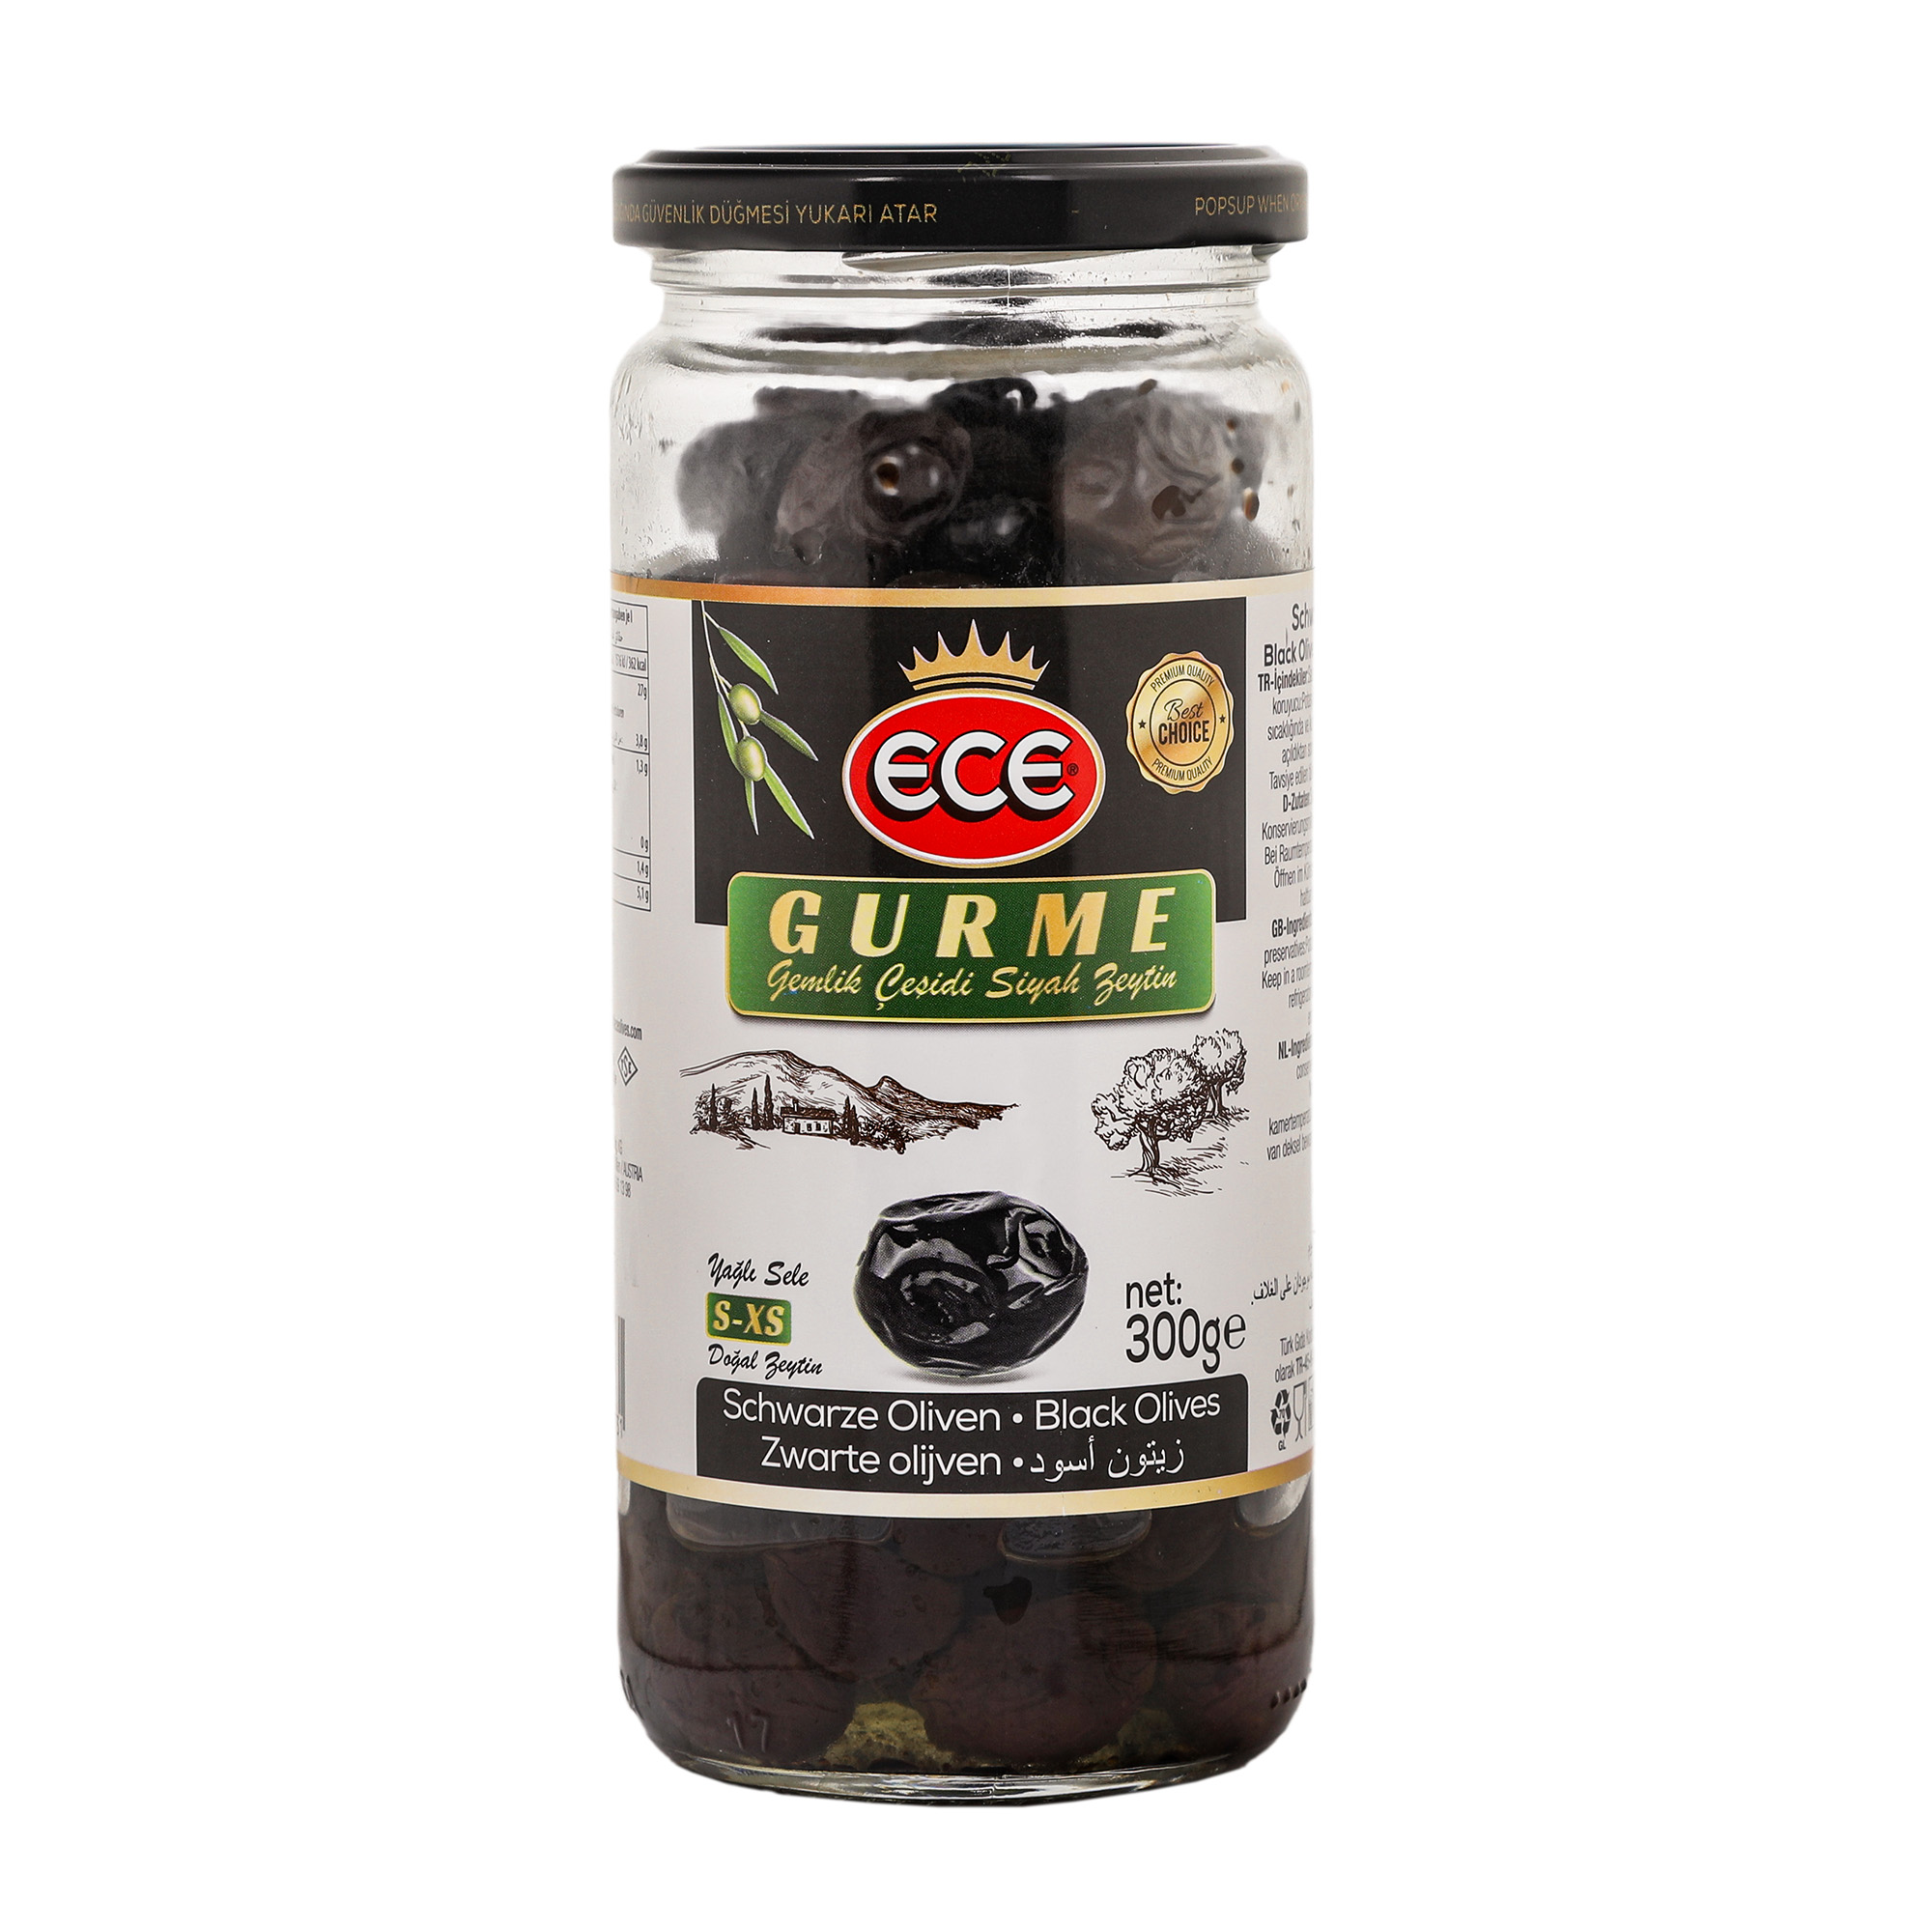 Оливки черные Ece Gurme в масле с косточкой, 300 г маслины hungrow без косточек 300 гр